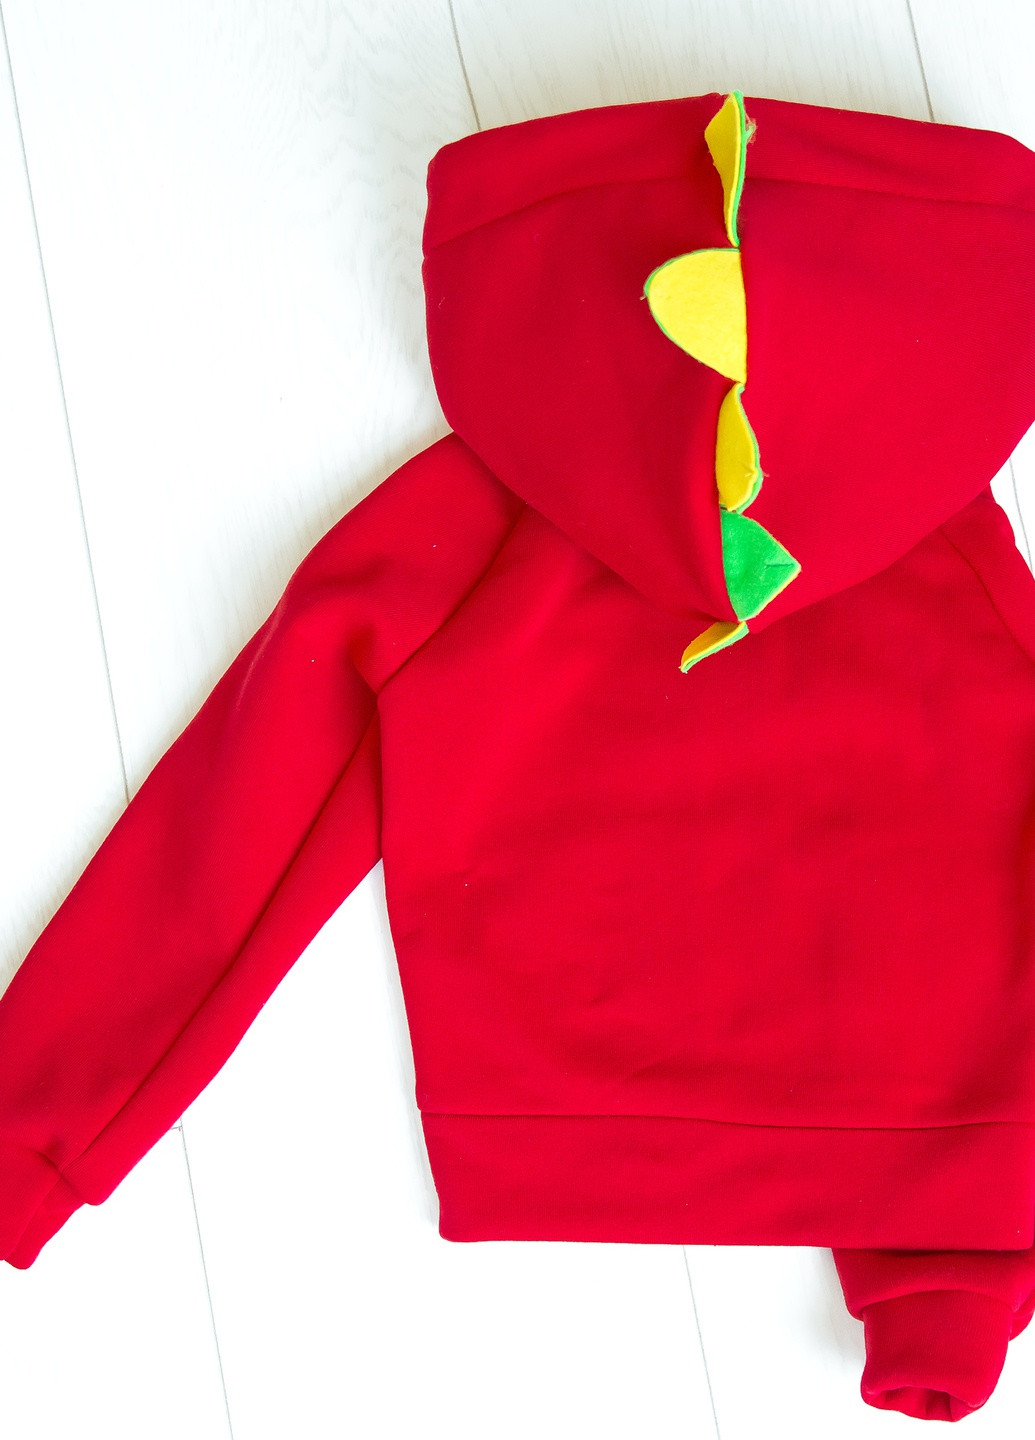 Красный демисезонный детский спортивный трикотажный костюм-трансформер с игрушкой дракон девочка красный 104-140 4-11 лет Zabavka